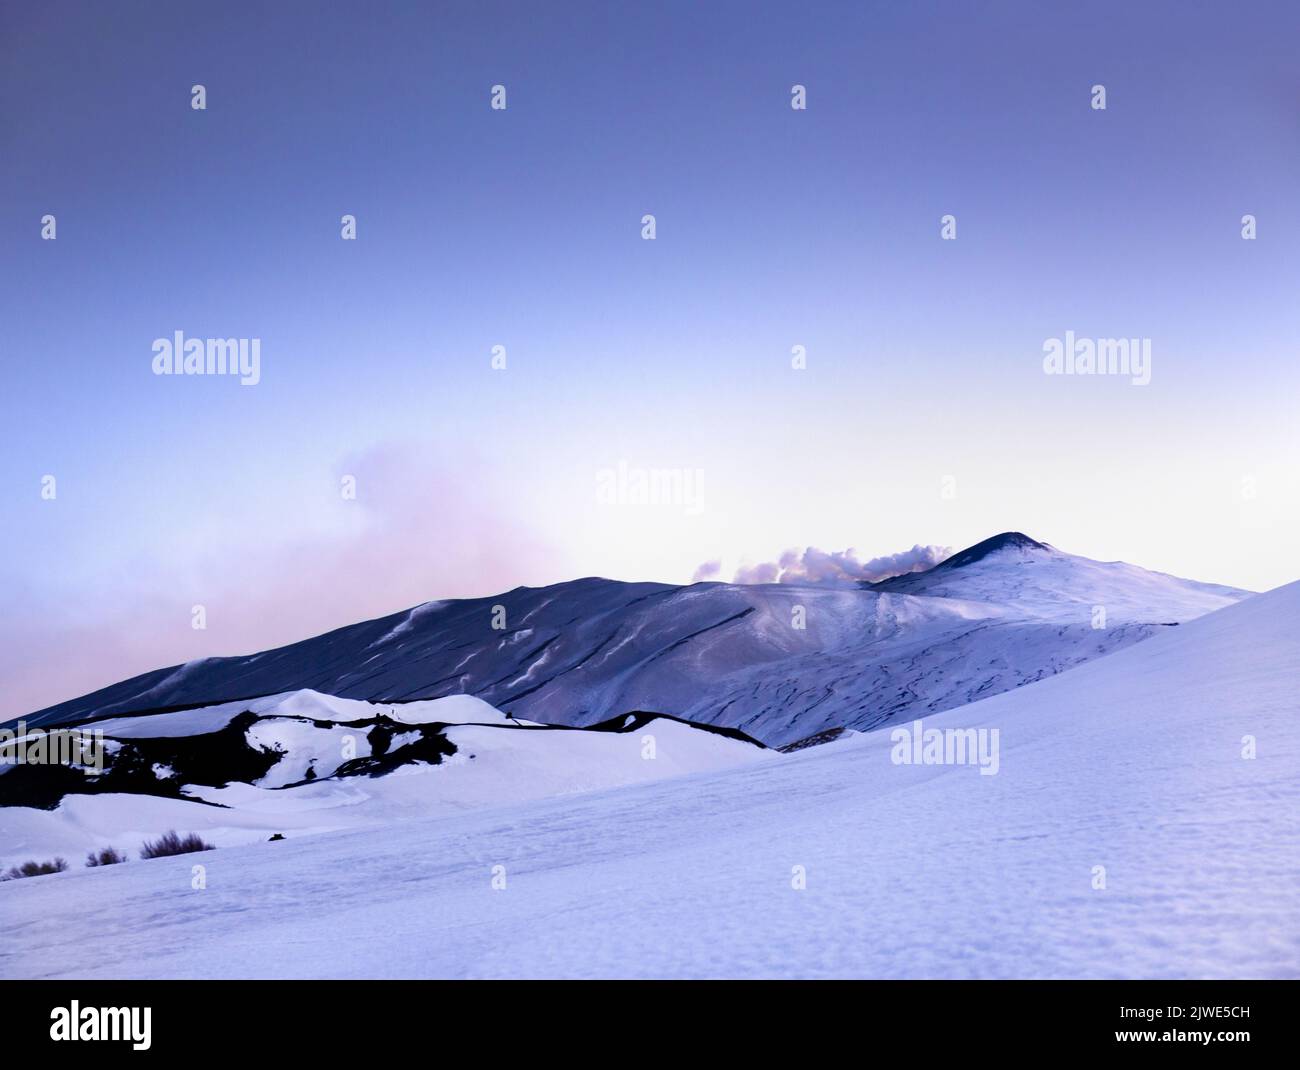 Etna - suggestivo paesaggio invernale con neve al tramonto durante la blue hour sul vulcano Etna al crepuscolo - Sicilia Stockfoto